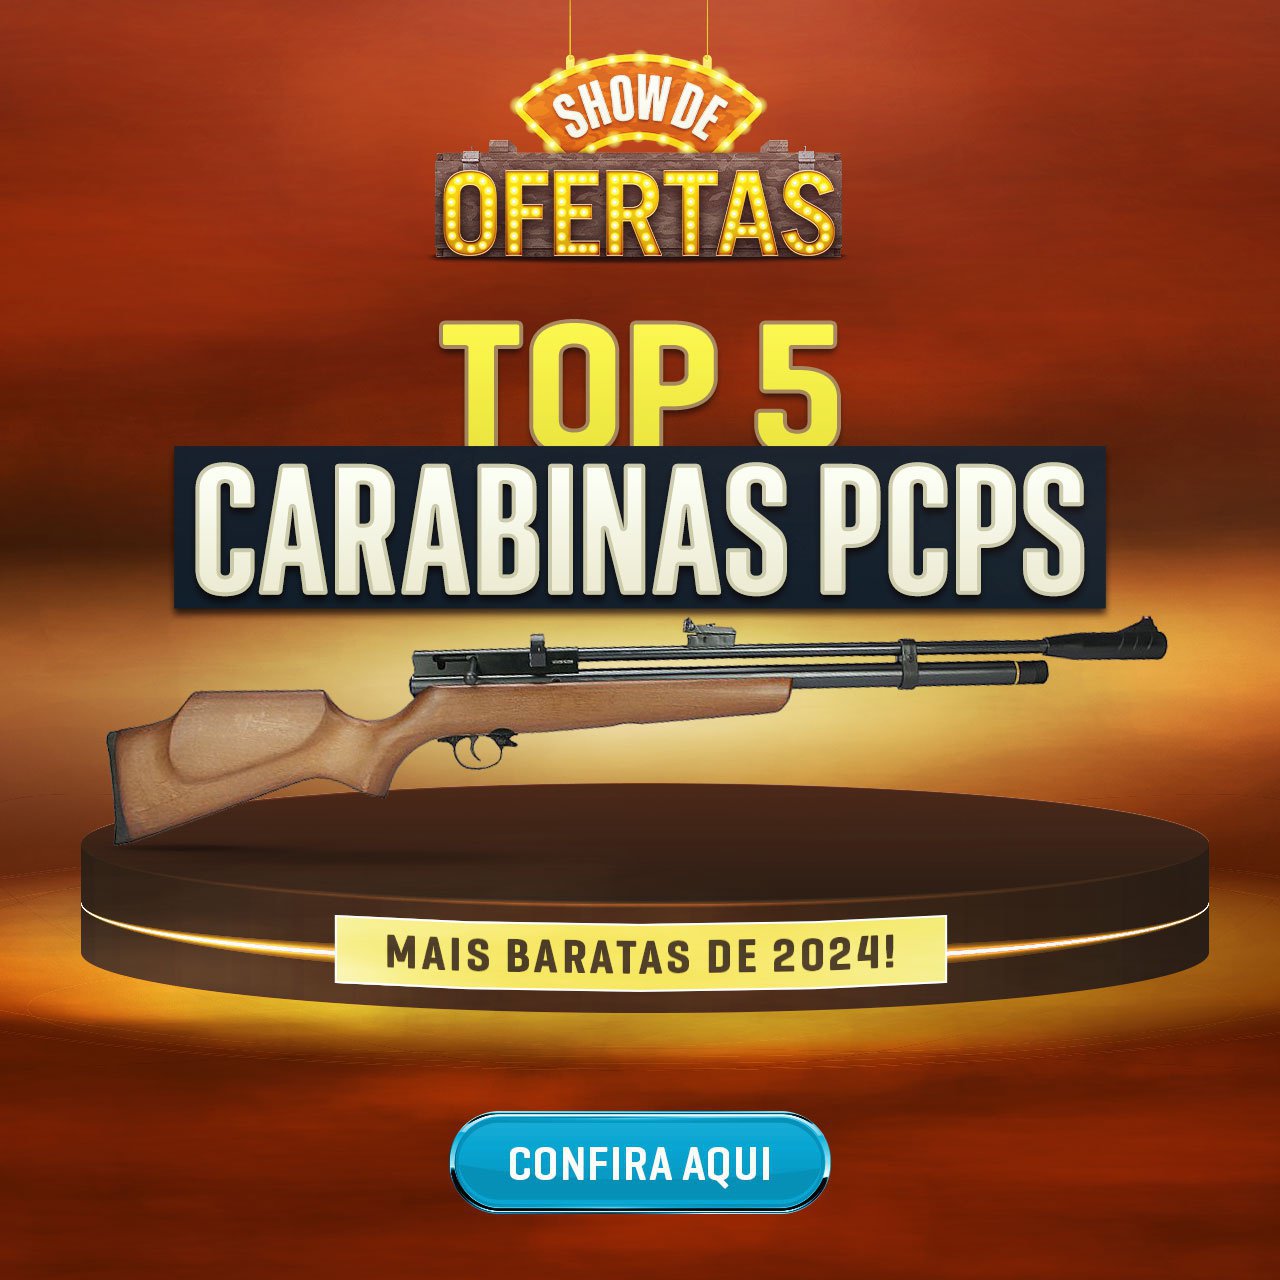 TOP 5 CARABINAS PCPs MAIS BARATAS DE 2024!